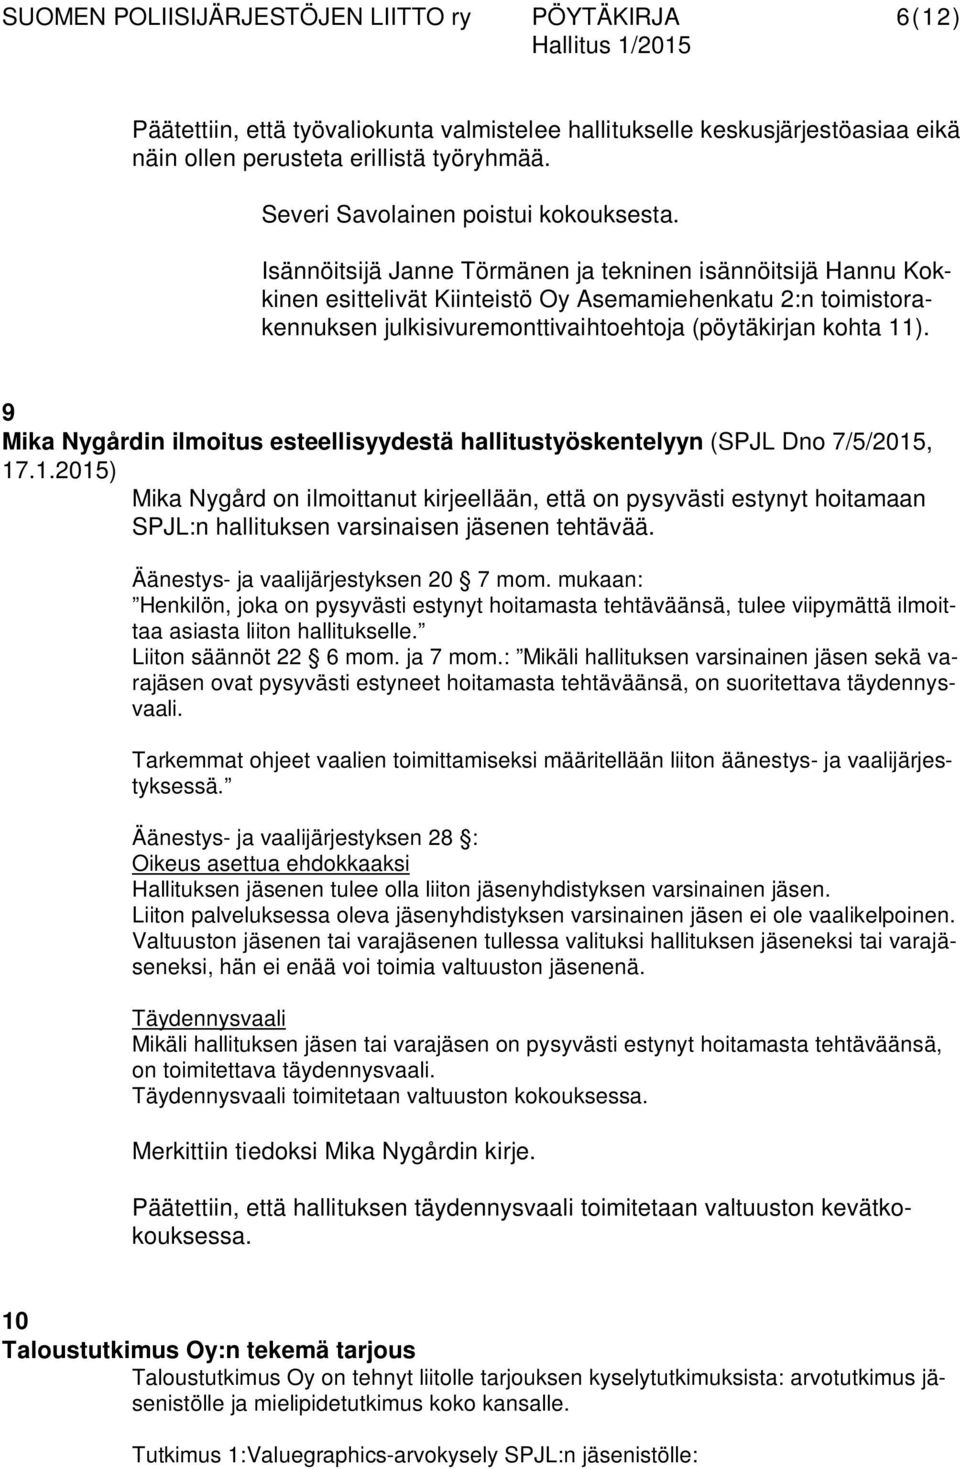 9 Mika Nygårdin ilmoitus esteellisyydestä hallitustyöskentelyyn (SPJL Dno 7/5/2015